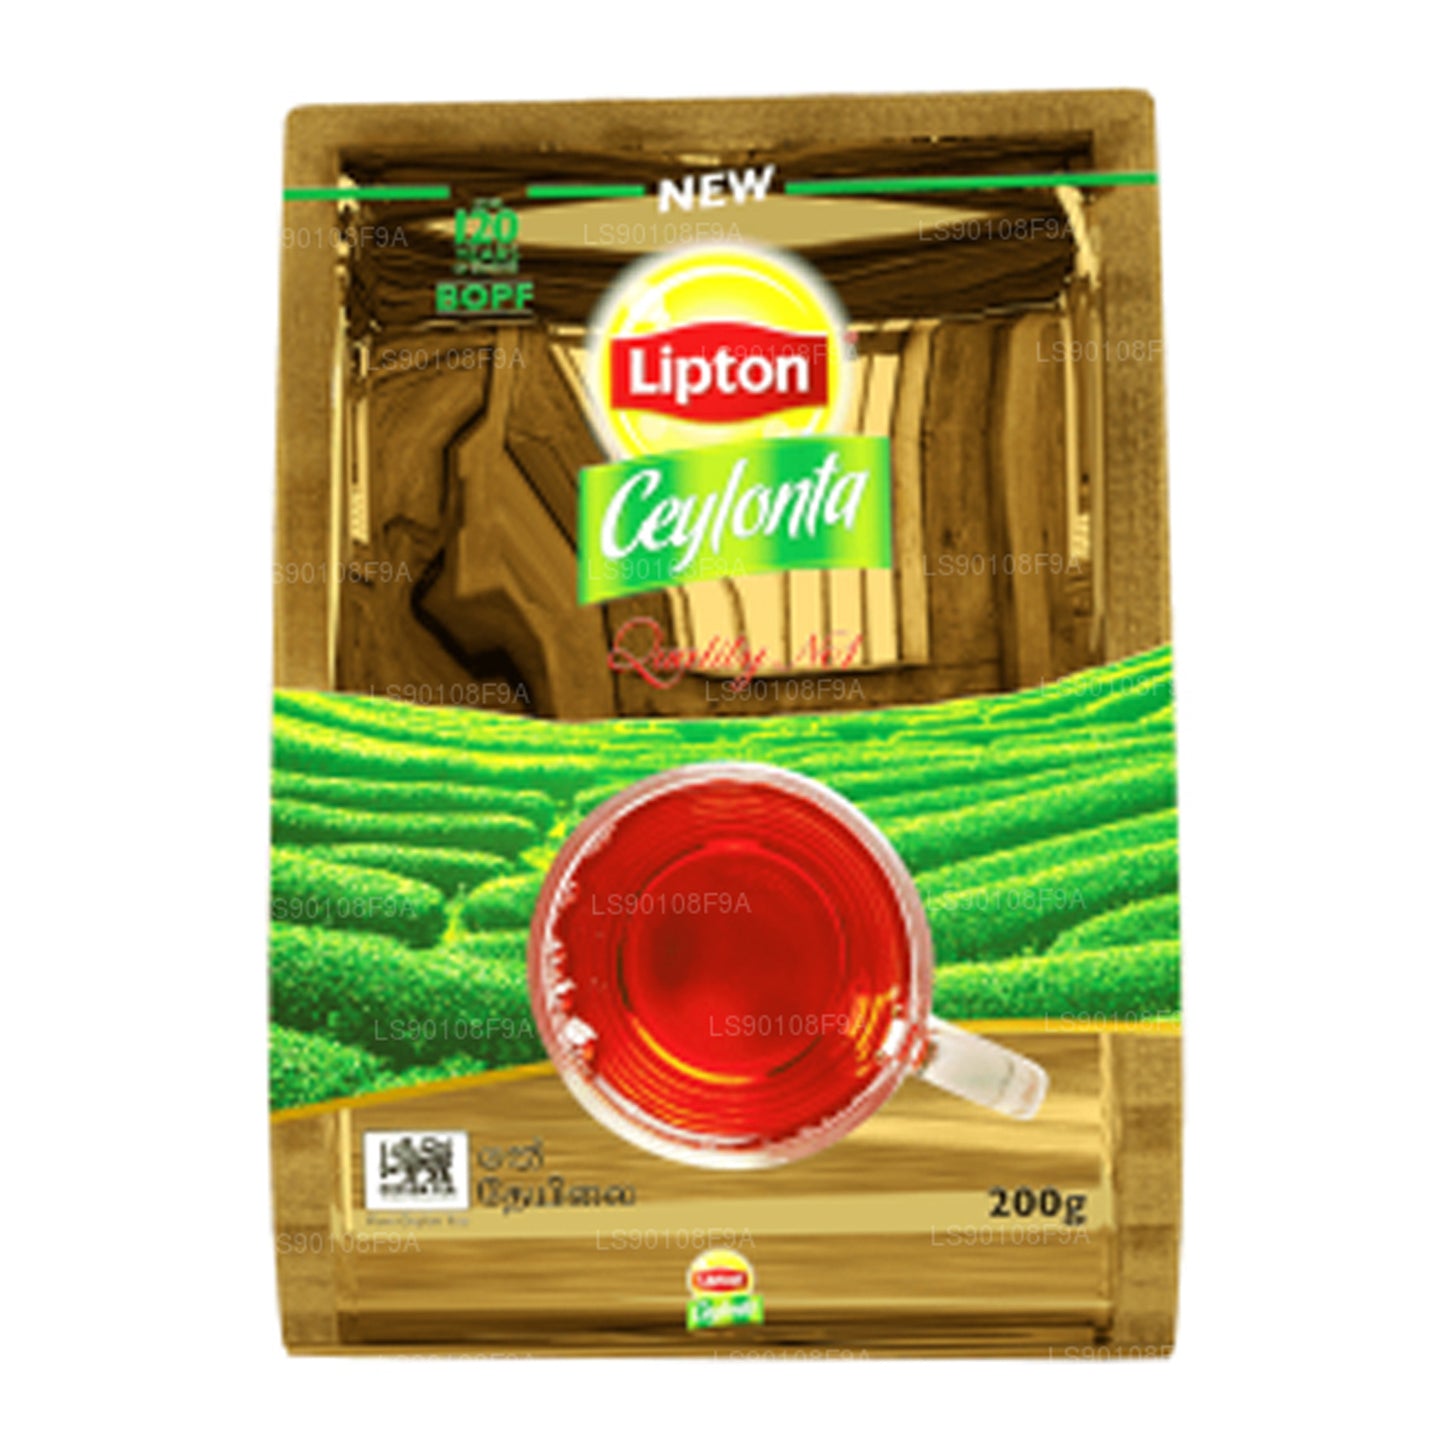 Bolsa de té negro Lipton Ceylonta (200 g)